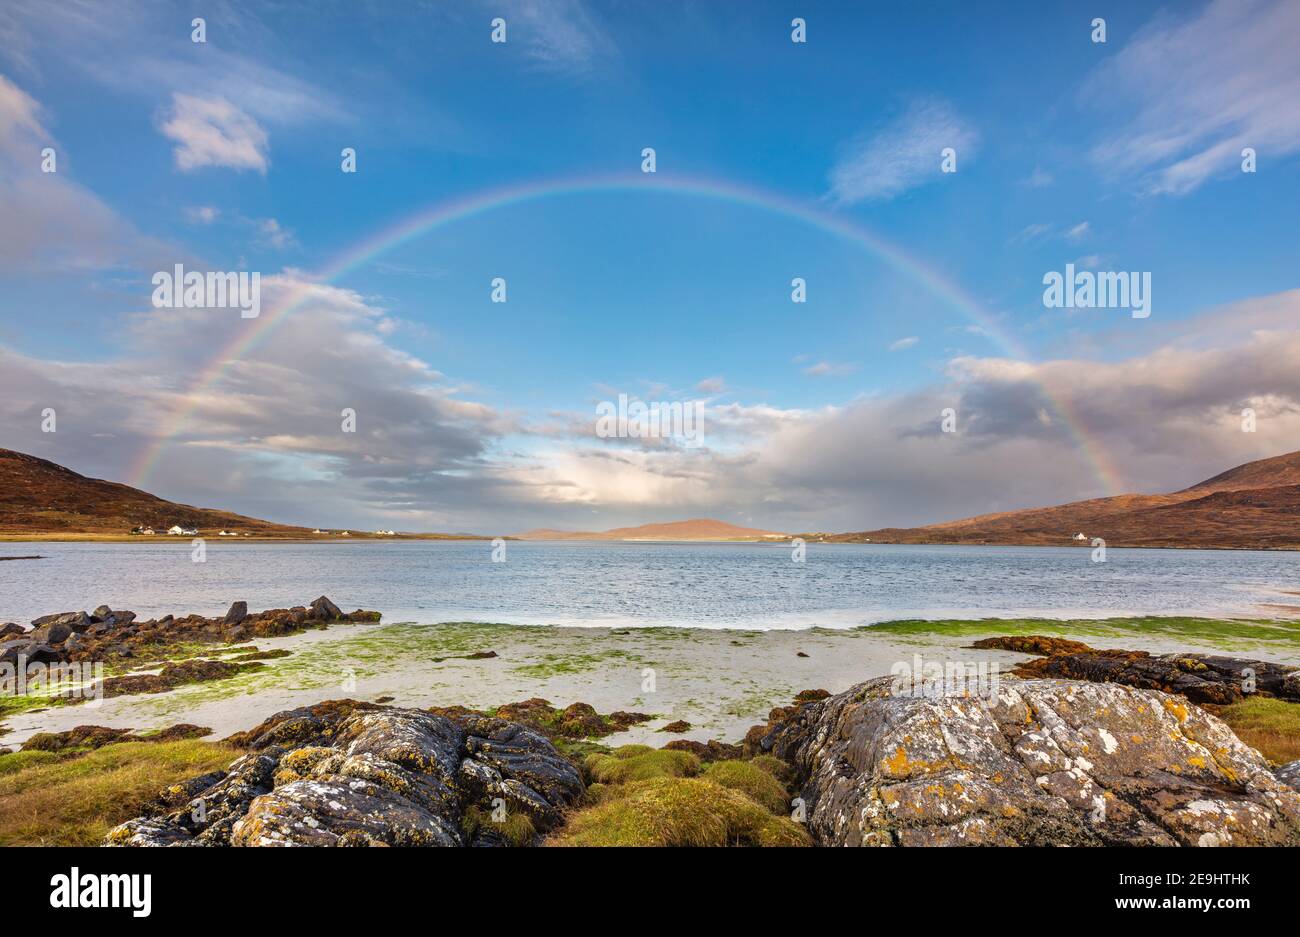 Isla de Lewis y Harris, Escocia: Un arco iris se extiende por la gran bahía de arena de la playa Luskentire en la isla South Harris Foto de stock